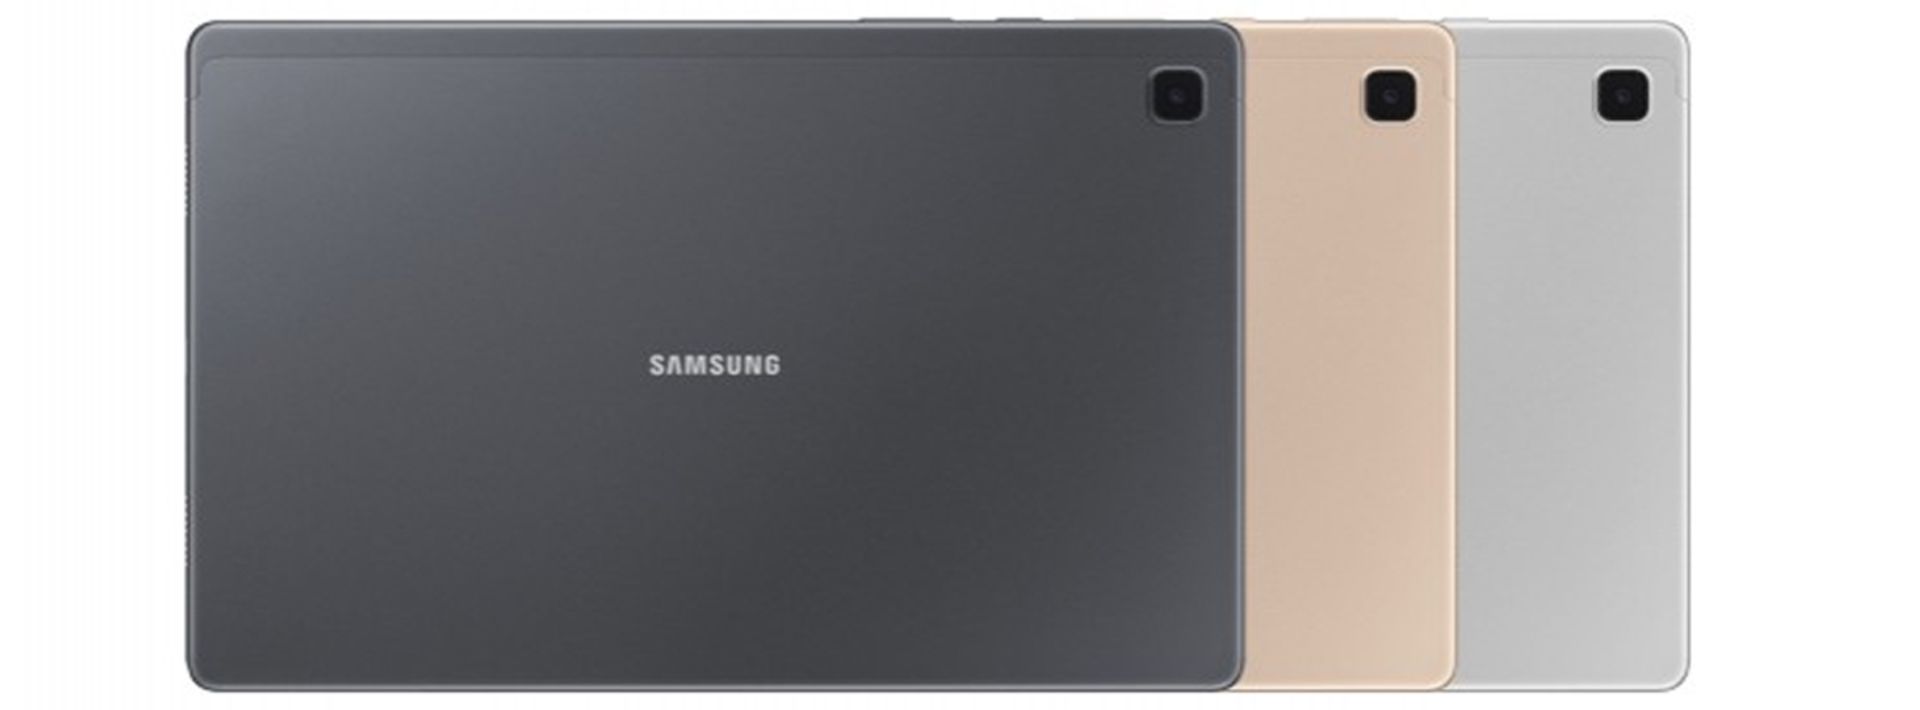 پنل پشتی گلکسی تب ای 7 سامسونگ / Galaxy Tab A7